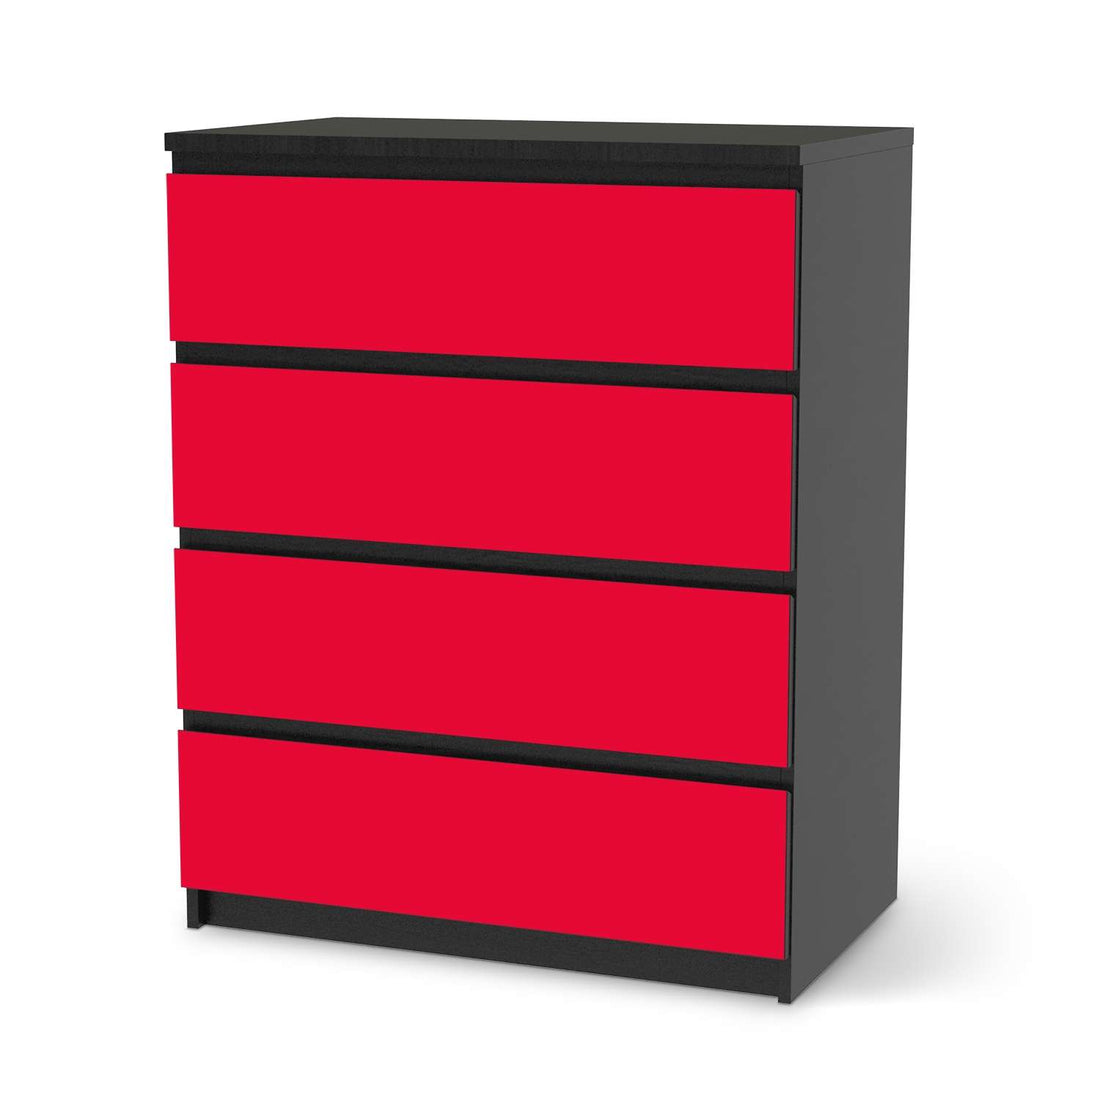 Folie für Möbel Rot Light - IKEA Malm Kommode 4 Schubladen - schwarz